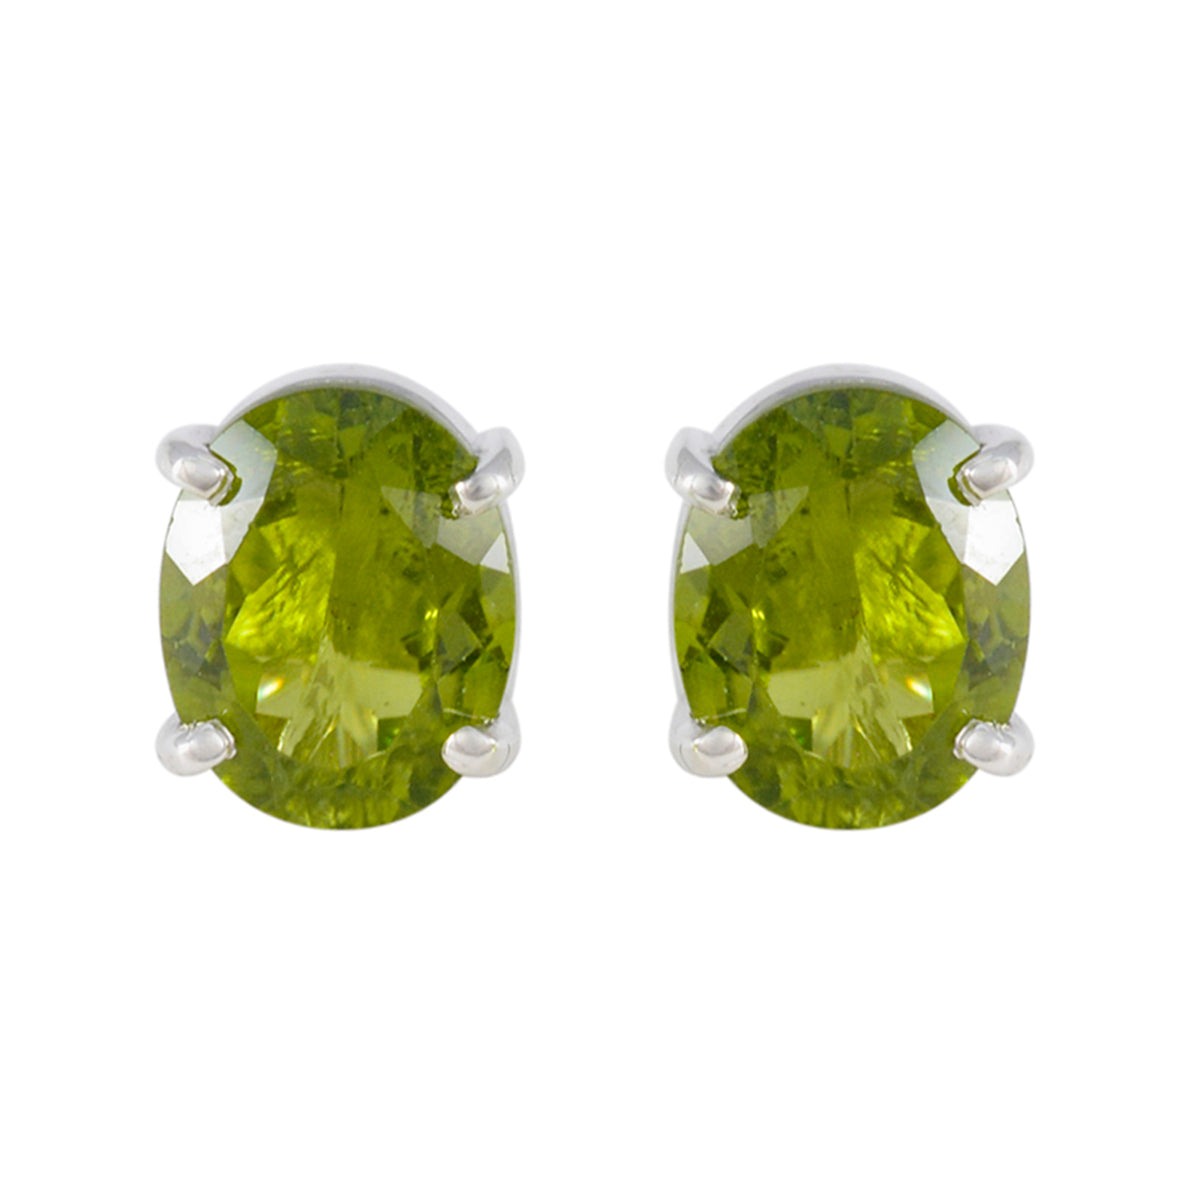 riyo gradevole orecchino in argento sterling per femme orecchino con peridoto con castone orecchino verde orecchino a perno